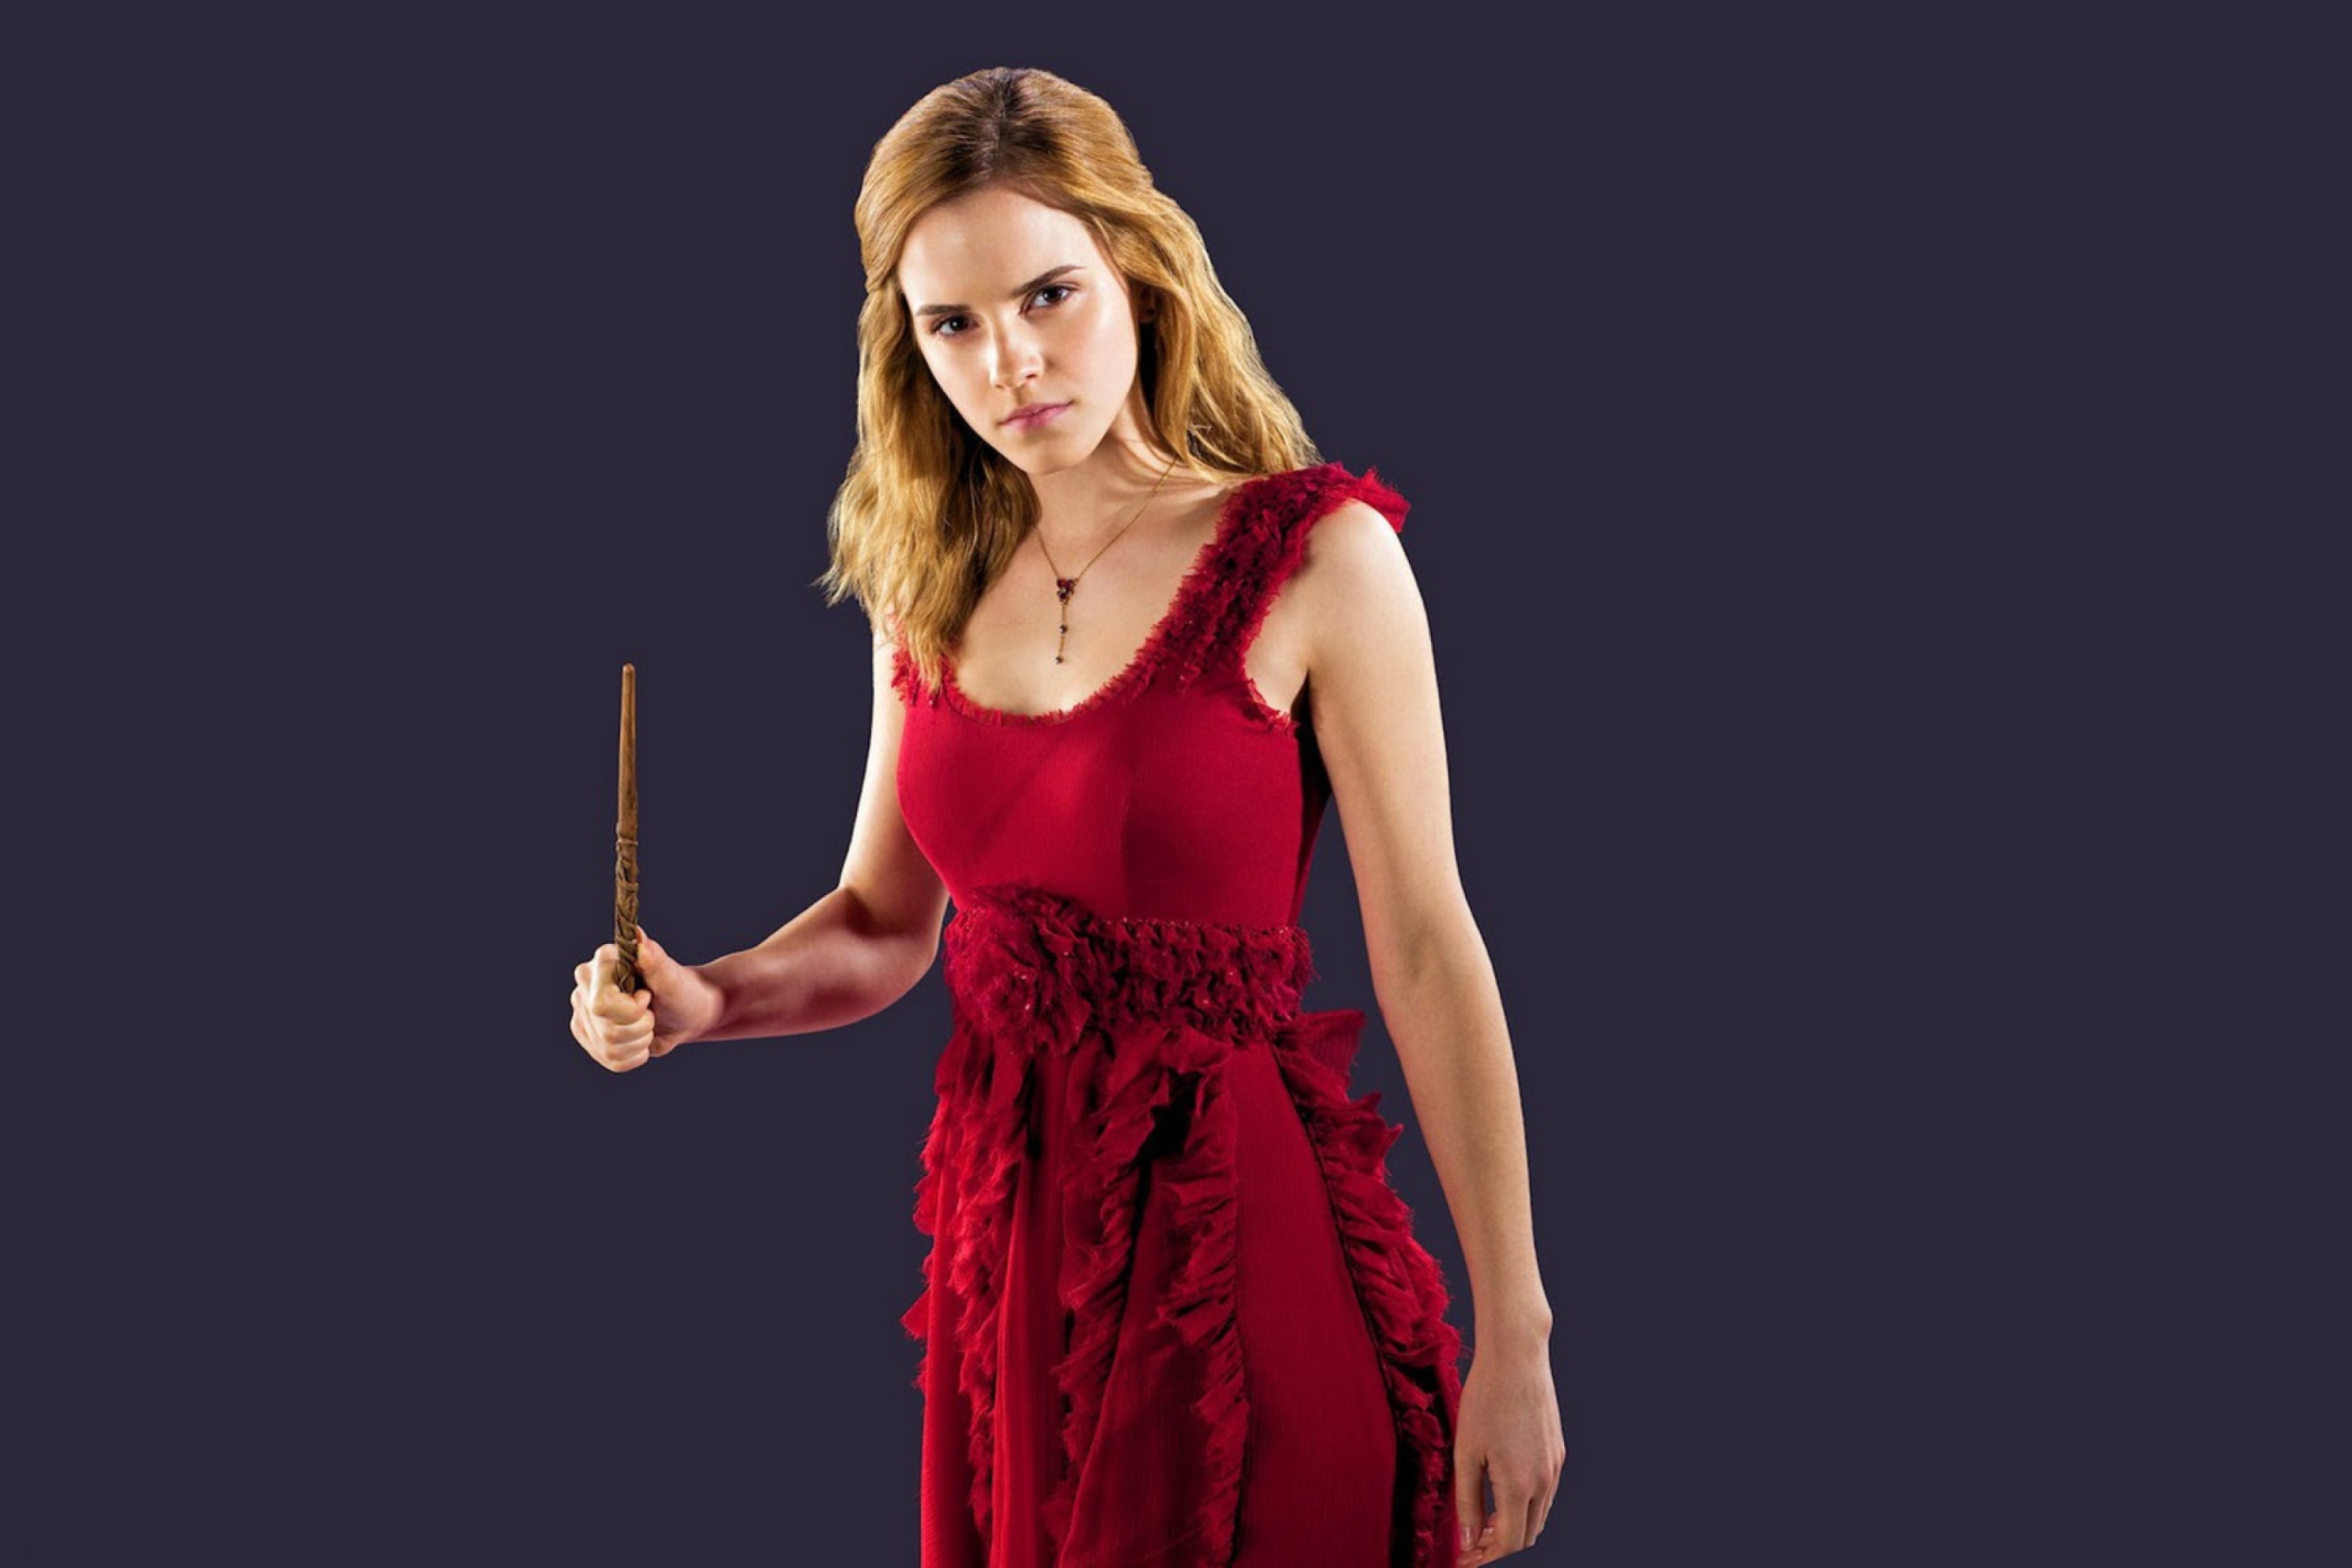 Das Emma Watson In Red Dress Wallpaper 2880x1920